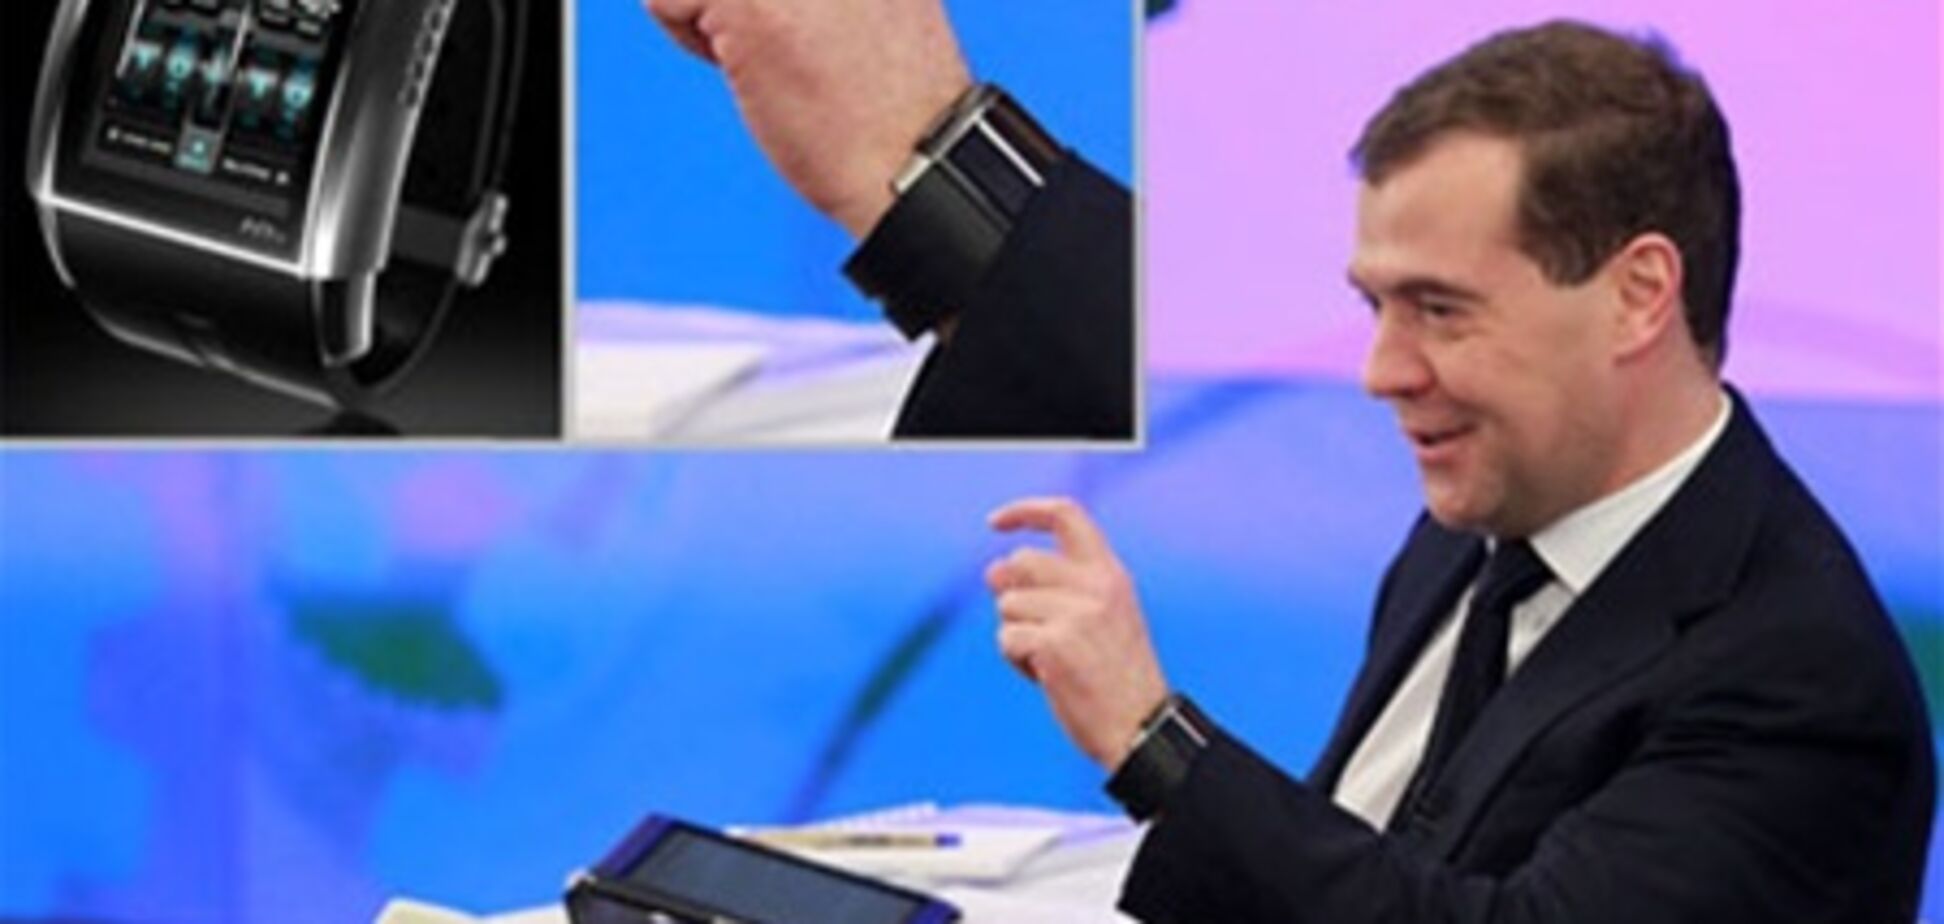 У Медведева появились часы со встроенным телевизором. Фото, видео